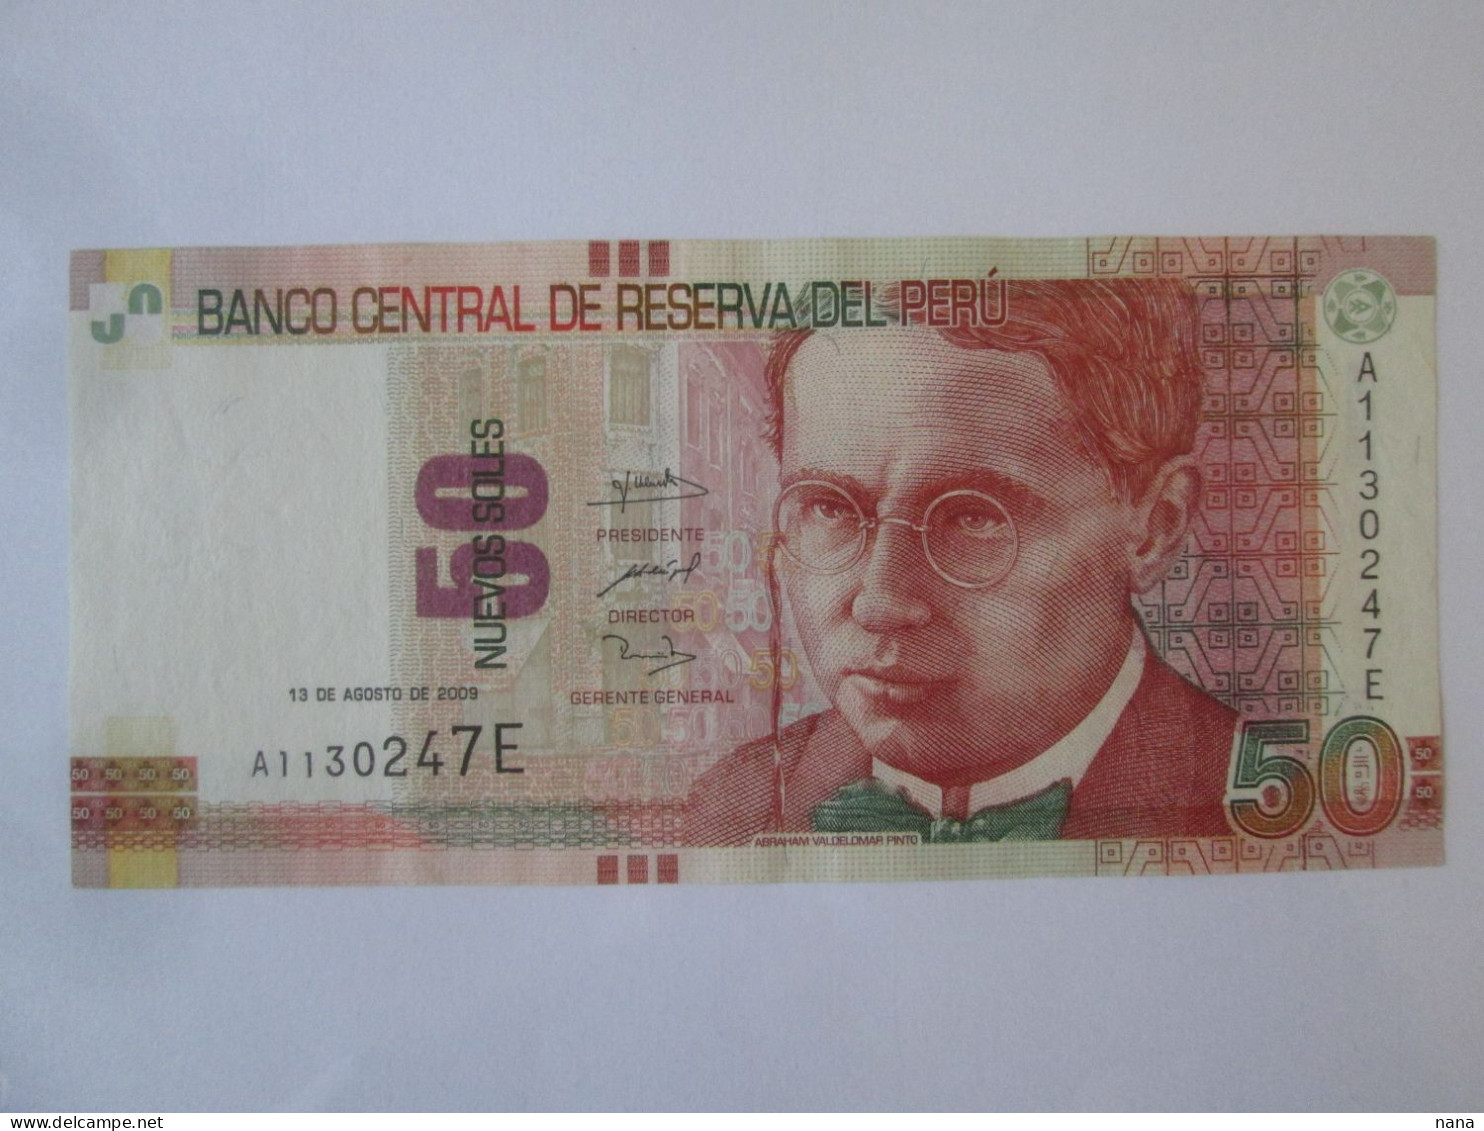 Rare Year! Peru 50 Nuevos Soles 2009 AUNC Banknote See Pictures - Perú